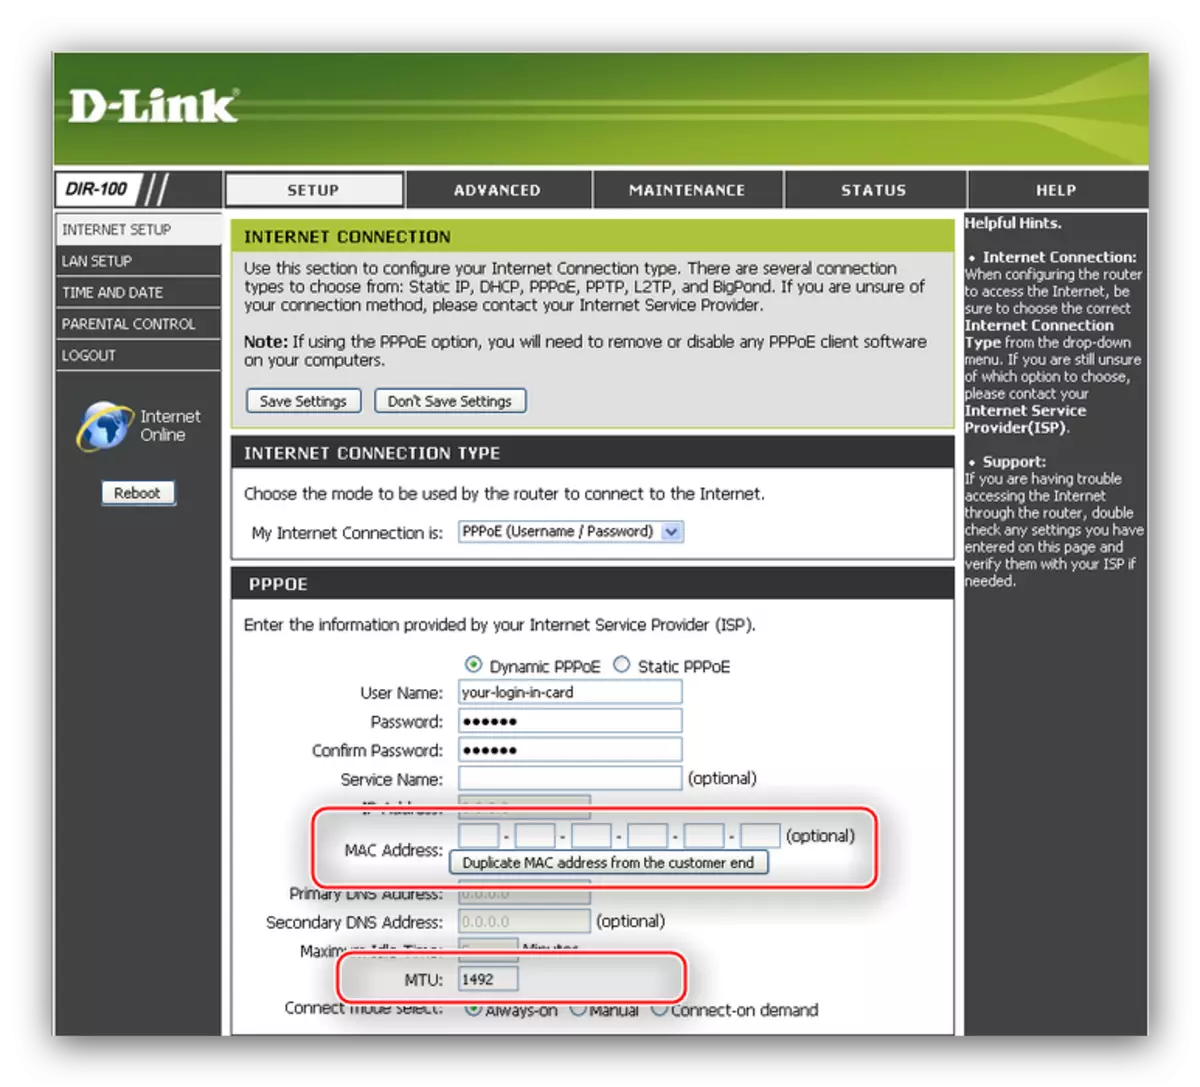 Selectarea hardware-ului MTU și clonarea Adresa PPPoE Conexiune pentru a configura routerul D-LINK DIR-100